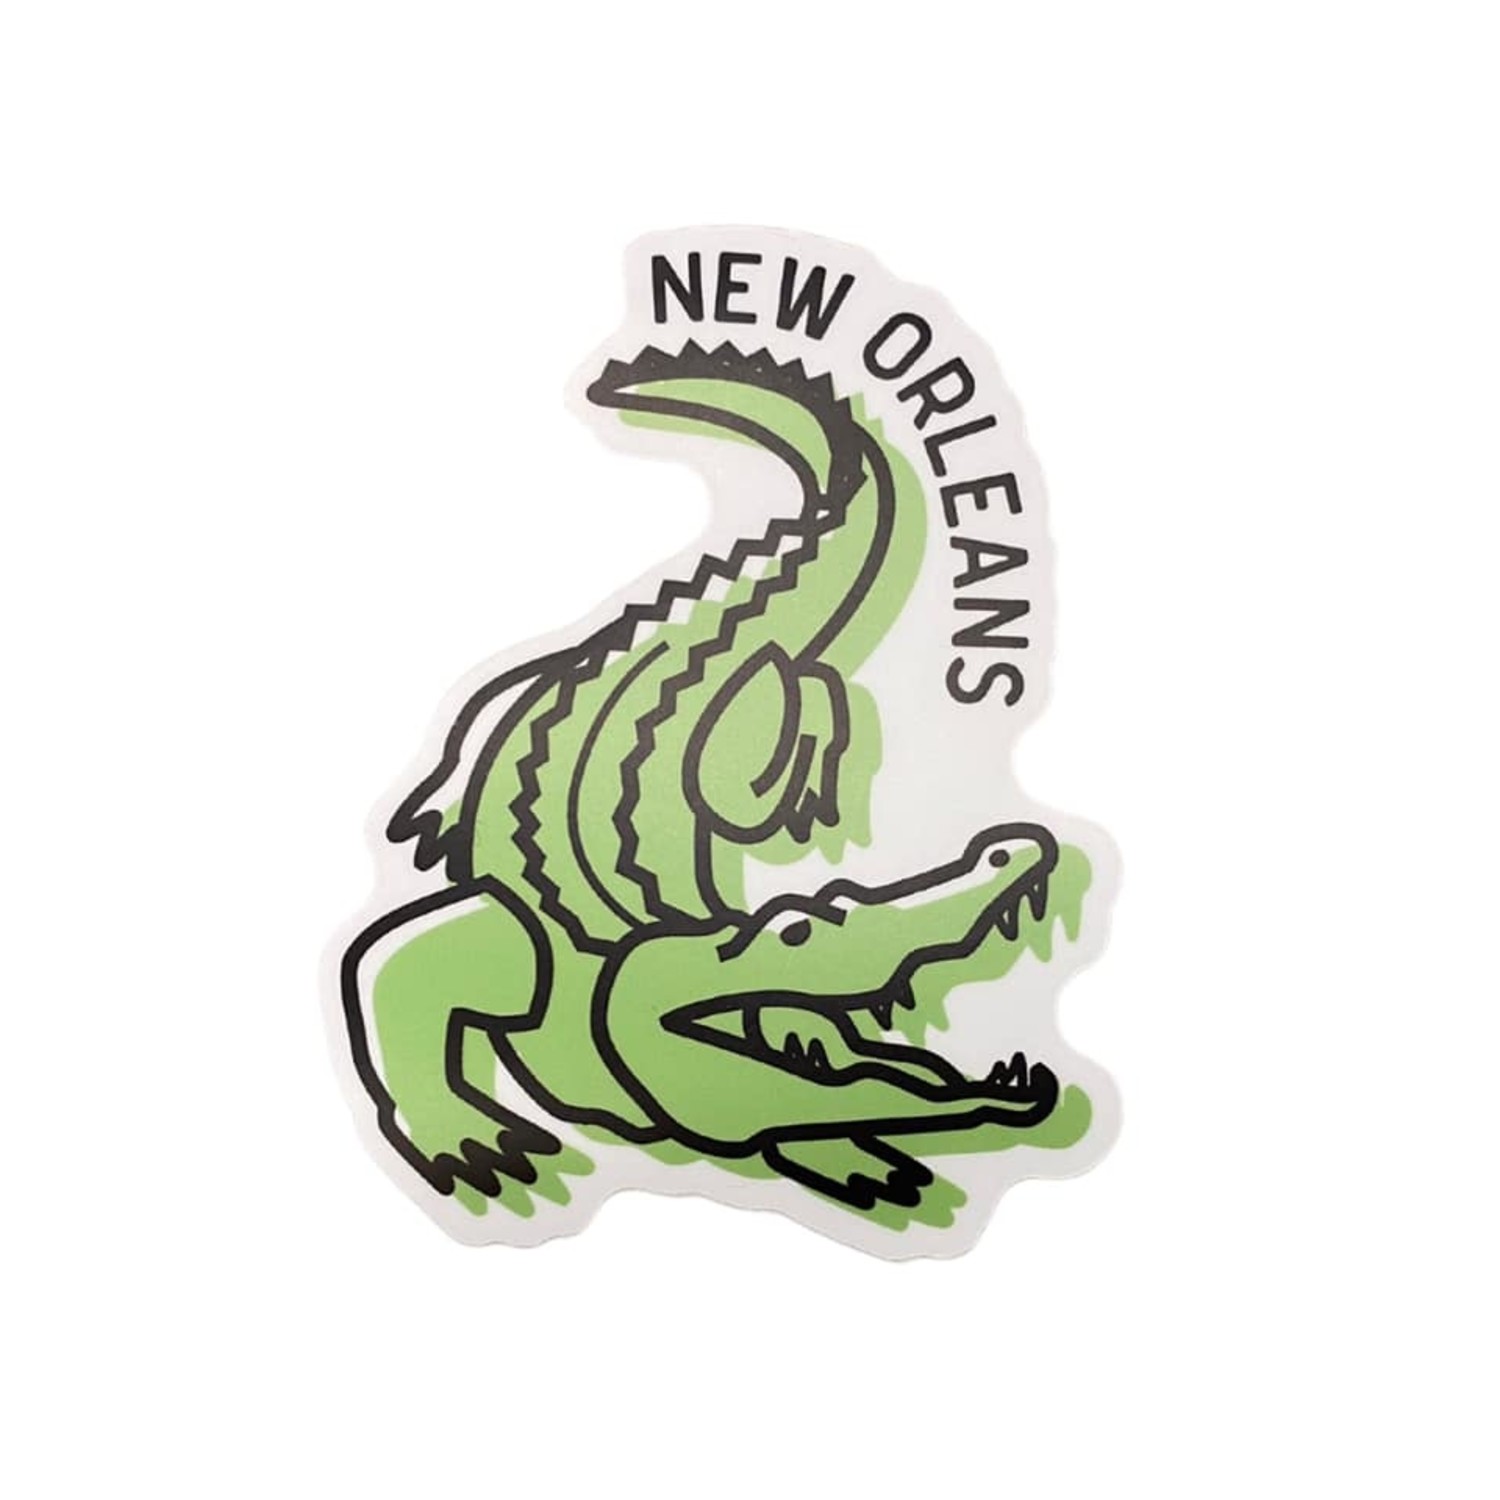 Orleans Alligator Sticker Fleurty